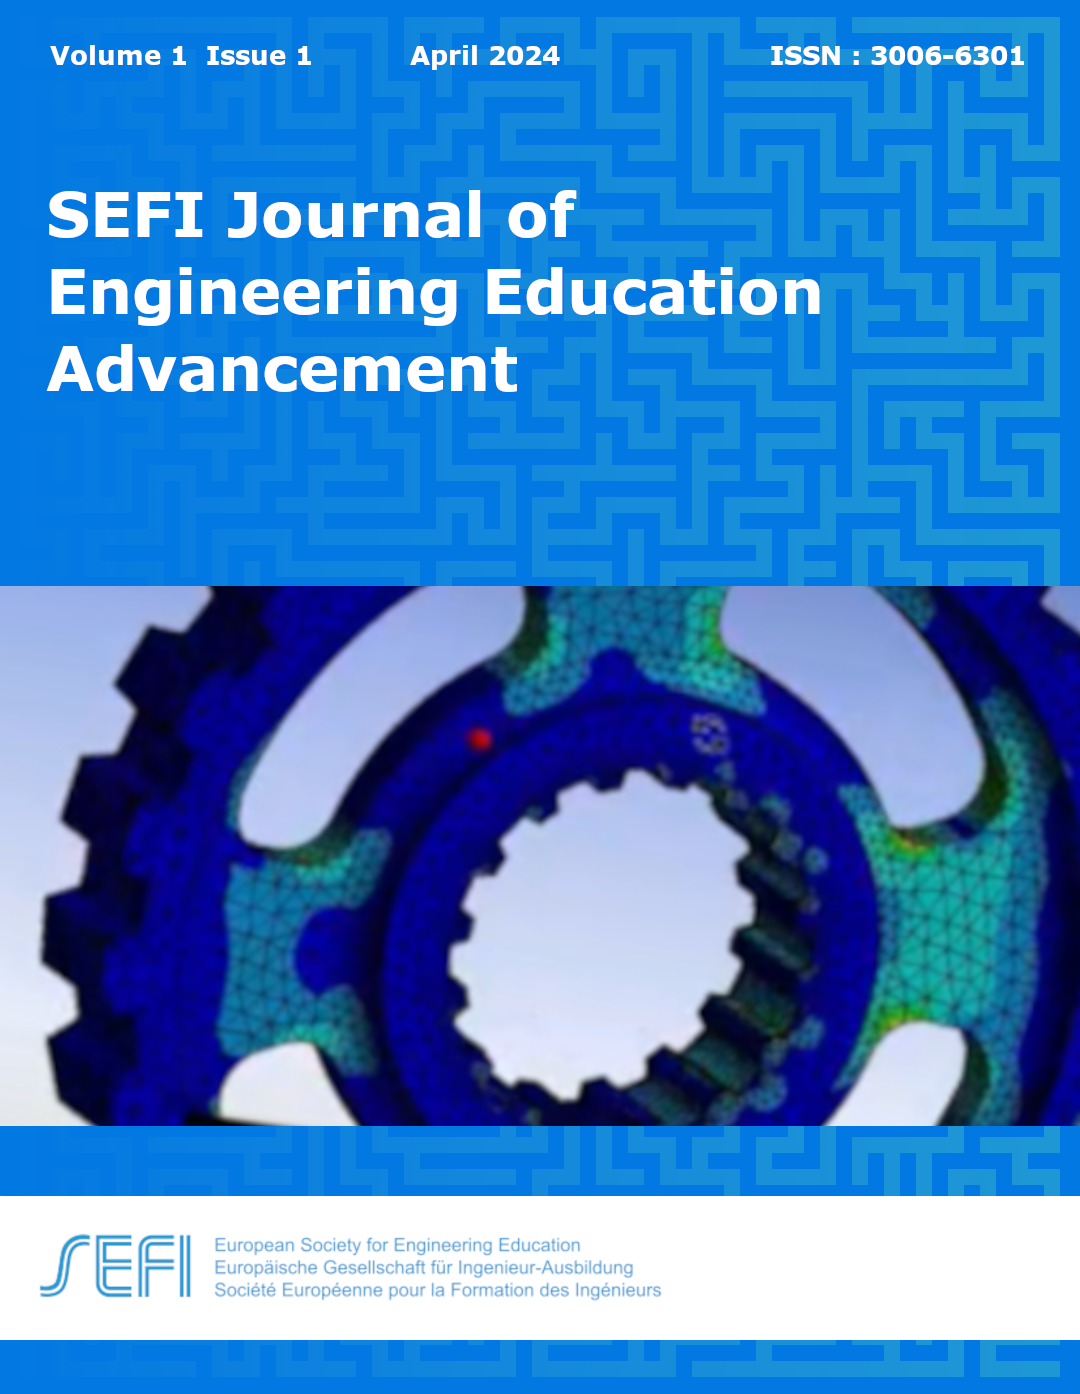 SEFI-JEEA-Vol1-Issue1-cover